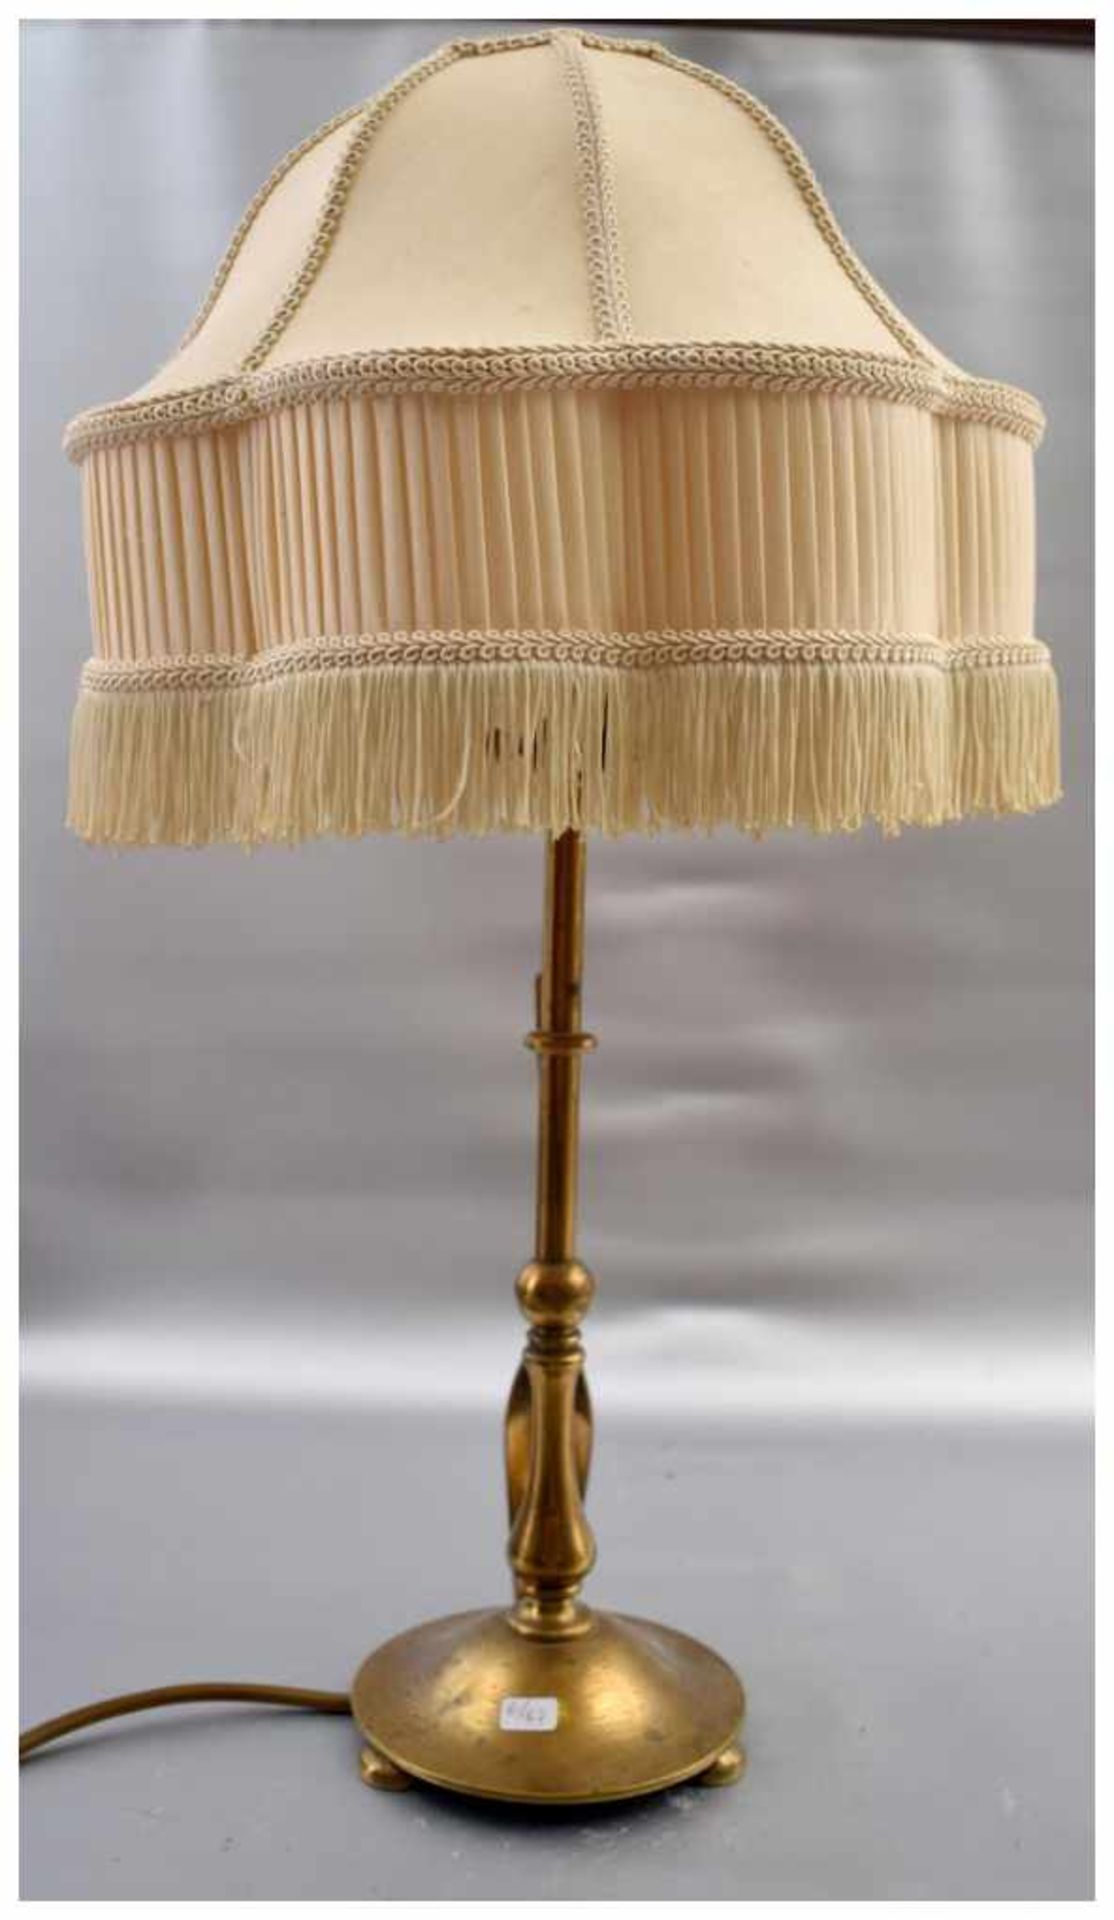 Tischlampe 1-lichtig, Messingfuß, auf drei Füßen stehend, runder gedrehter Schaft, beigefarbener